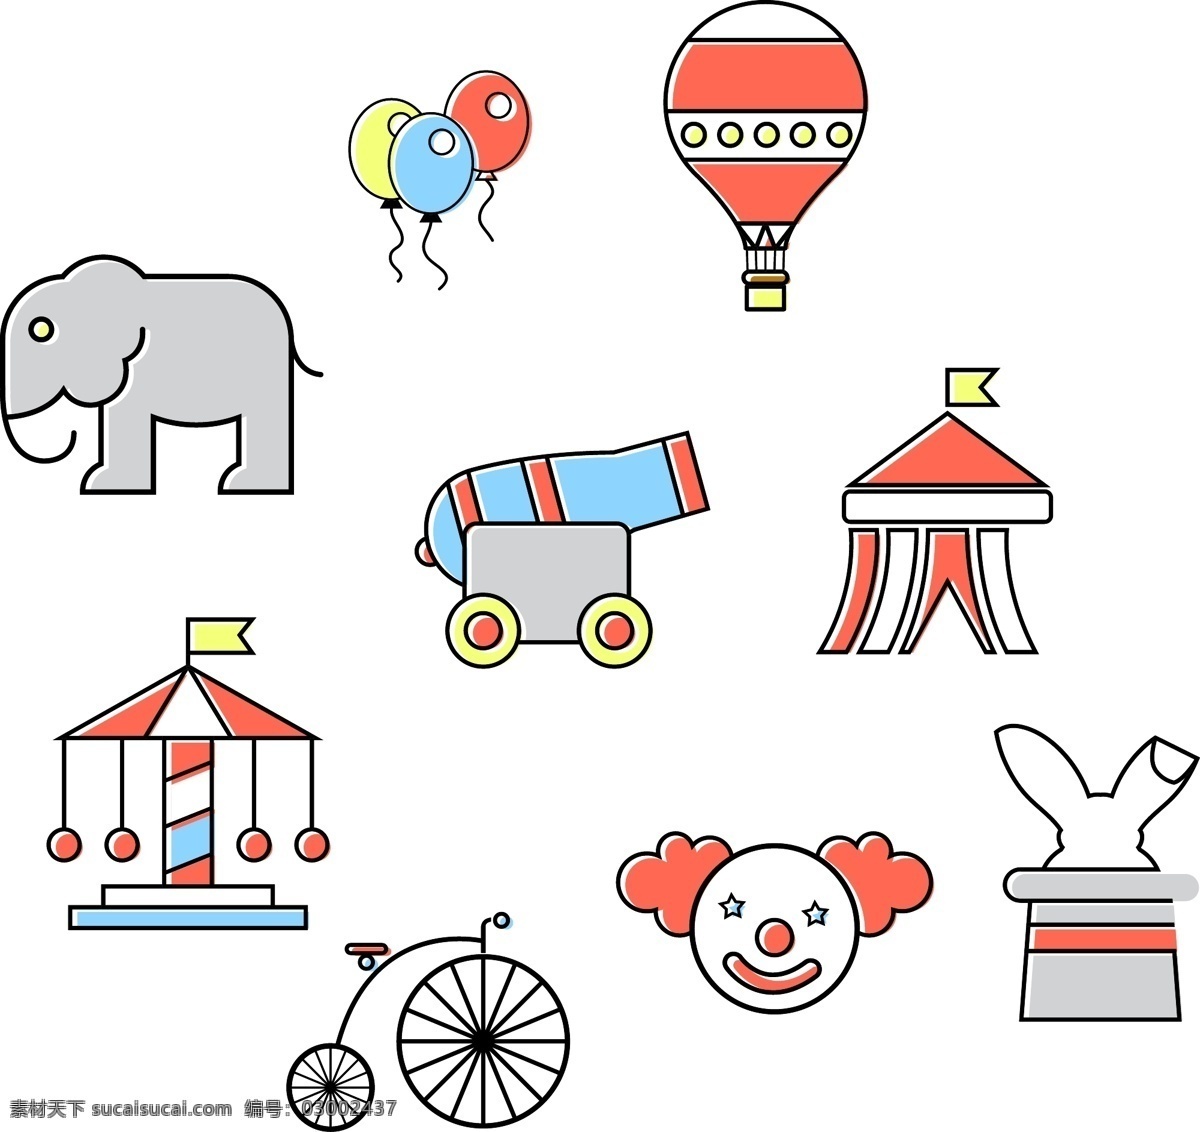 卡通 热闹 马戏团 矢量 气球 热气球 大象 灰色大象 旋转木马 独轮车 小丑 高射炮 魔术兔 马戏团大棚